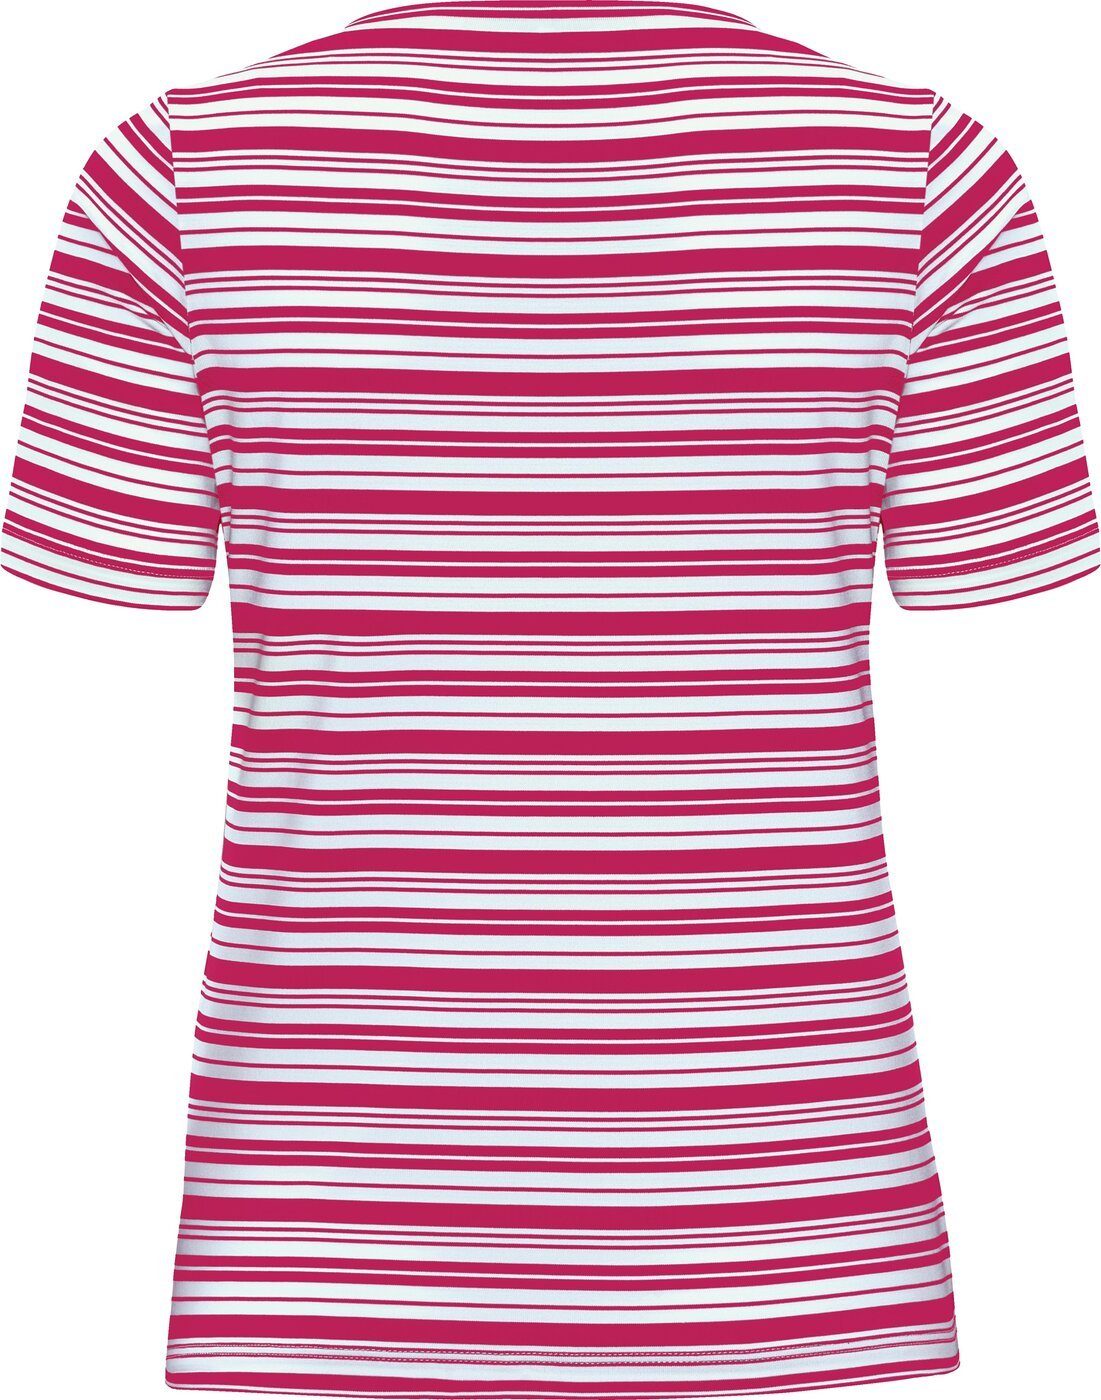 MAURAW-SHIRT SCHNEIDER T-Shirt RUBYPINK/WEIß Sportswear